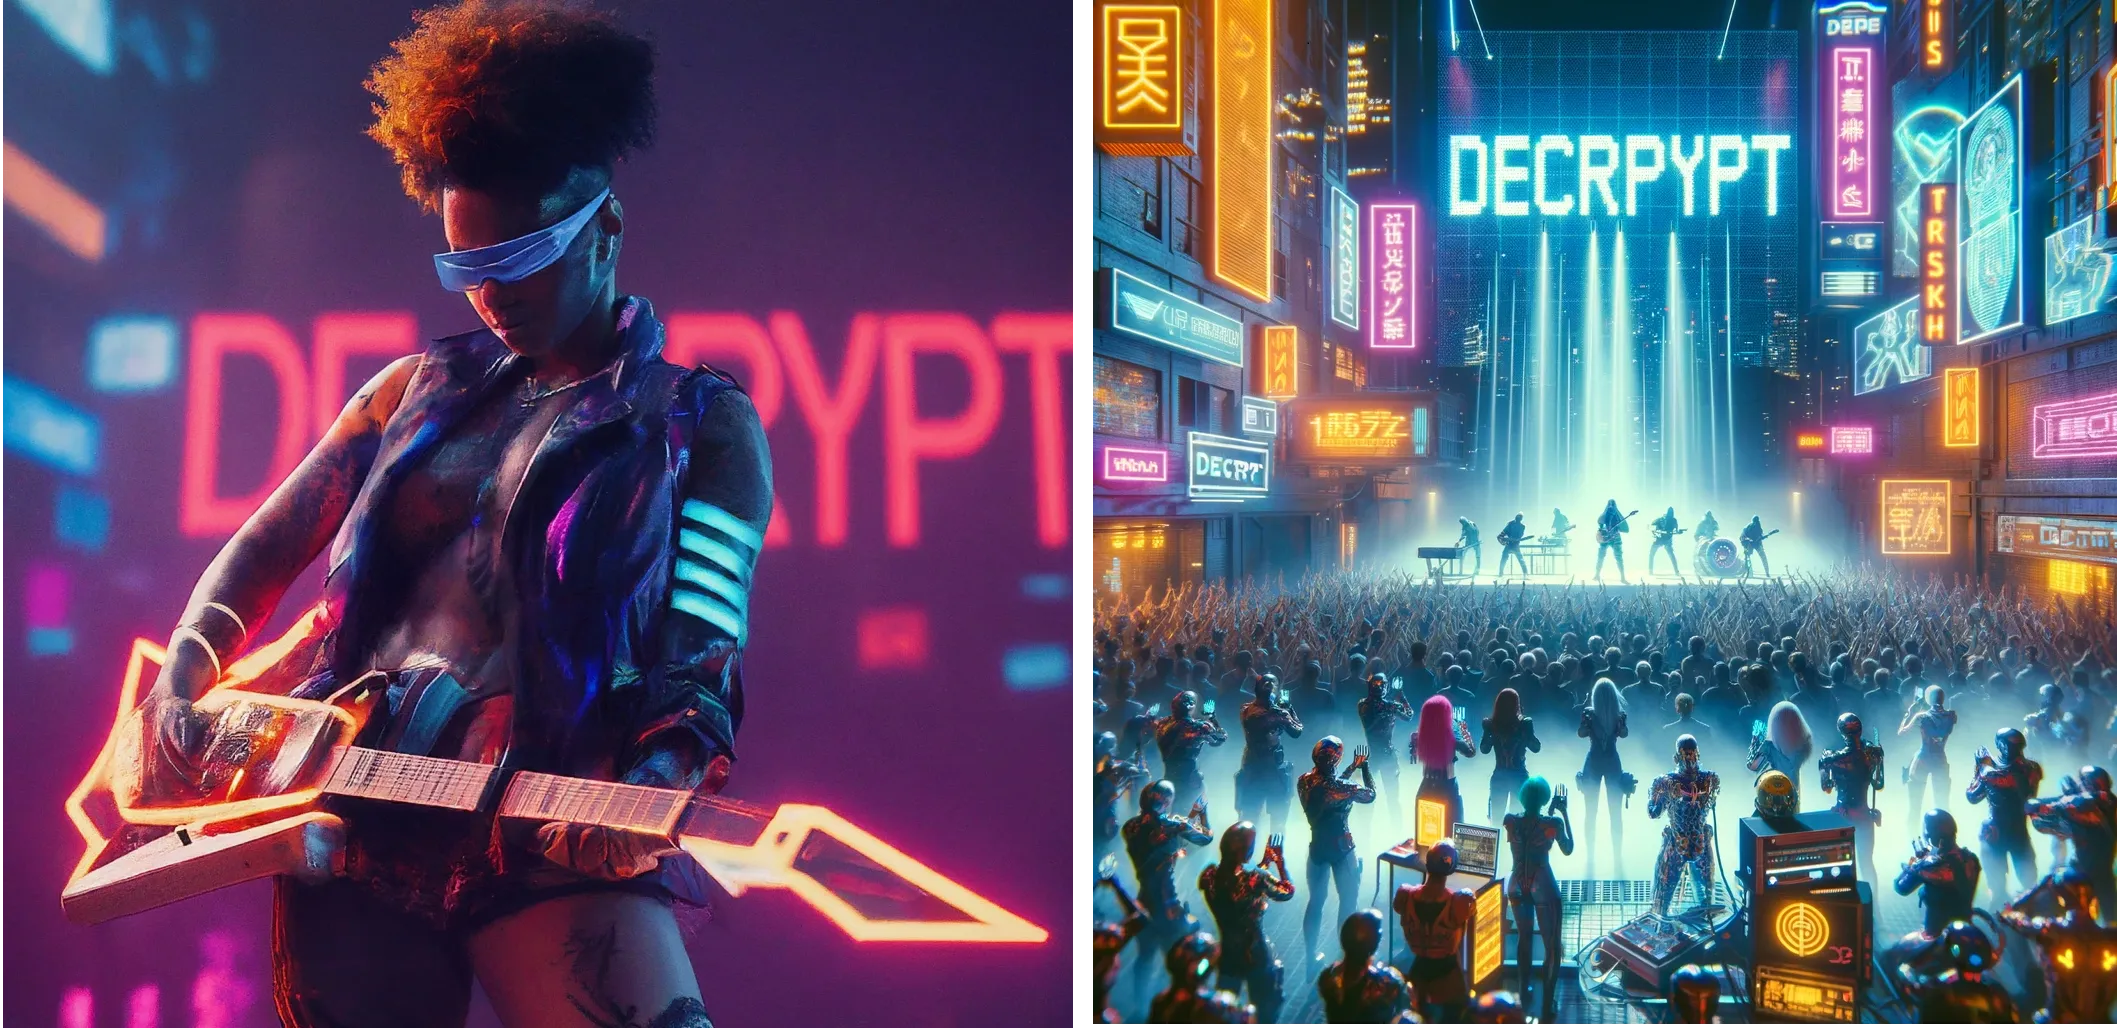 Artista futurista cyberpunk actuando en el escenario con la palabra "DECRYPT" en luces de neón en el fondo. Gemini (izquierda) vs ChatGPT Plus (derecha)